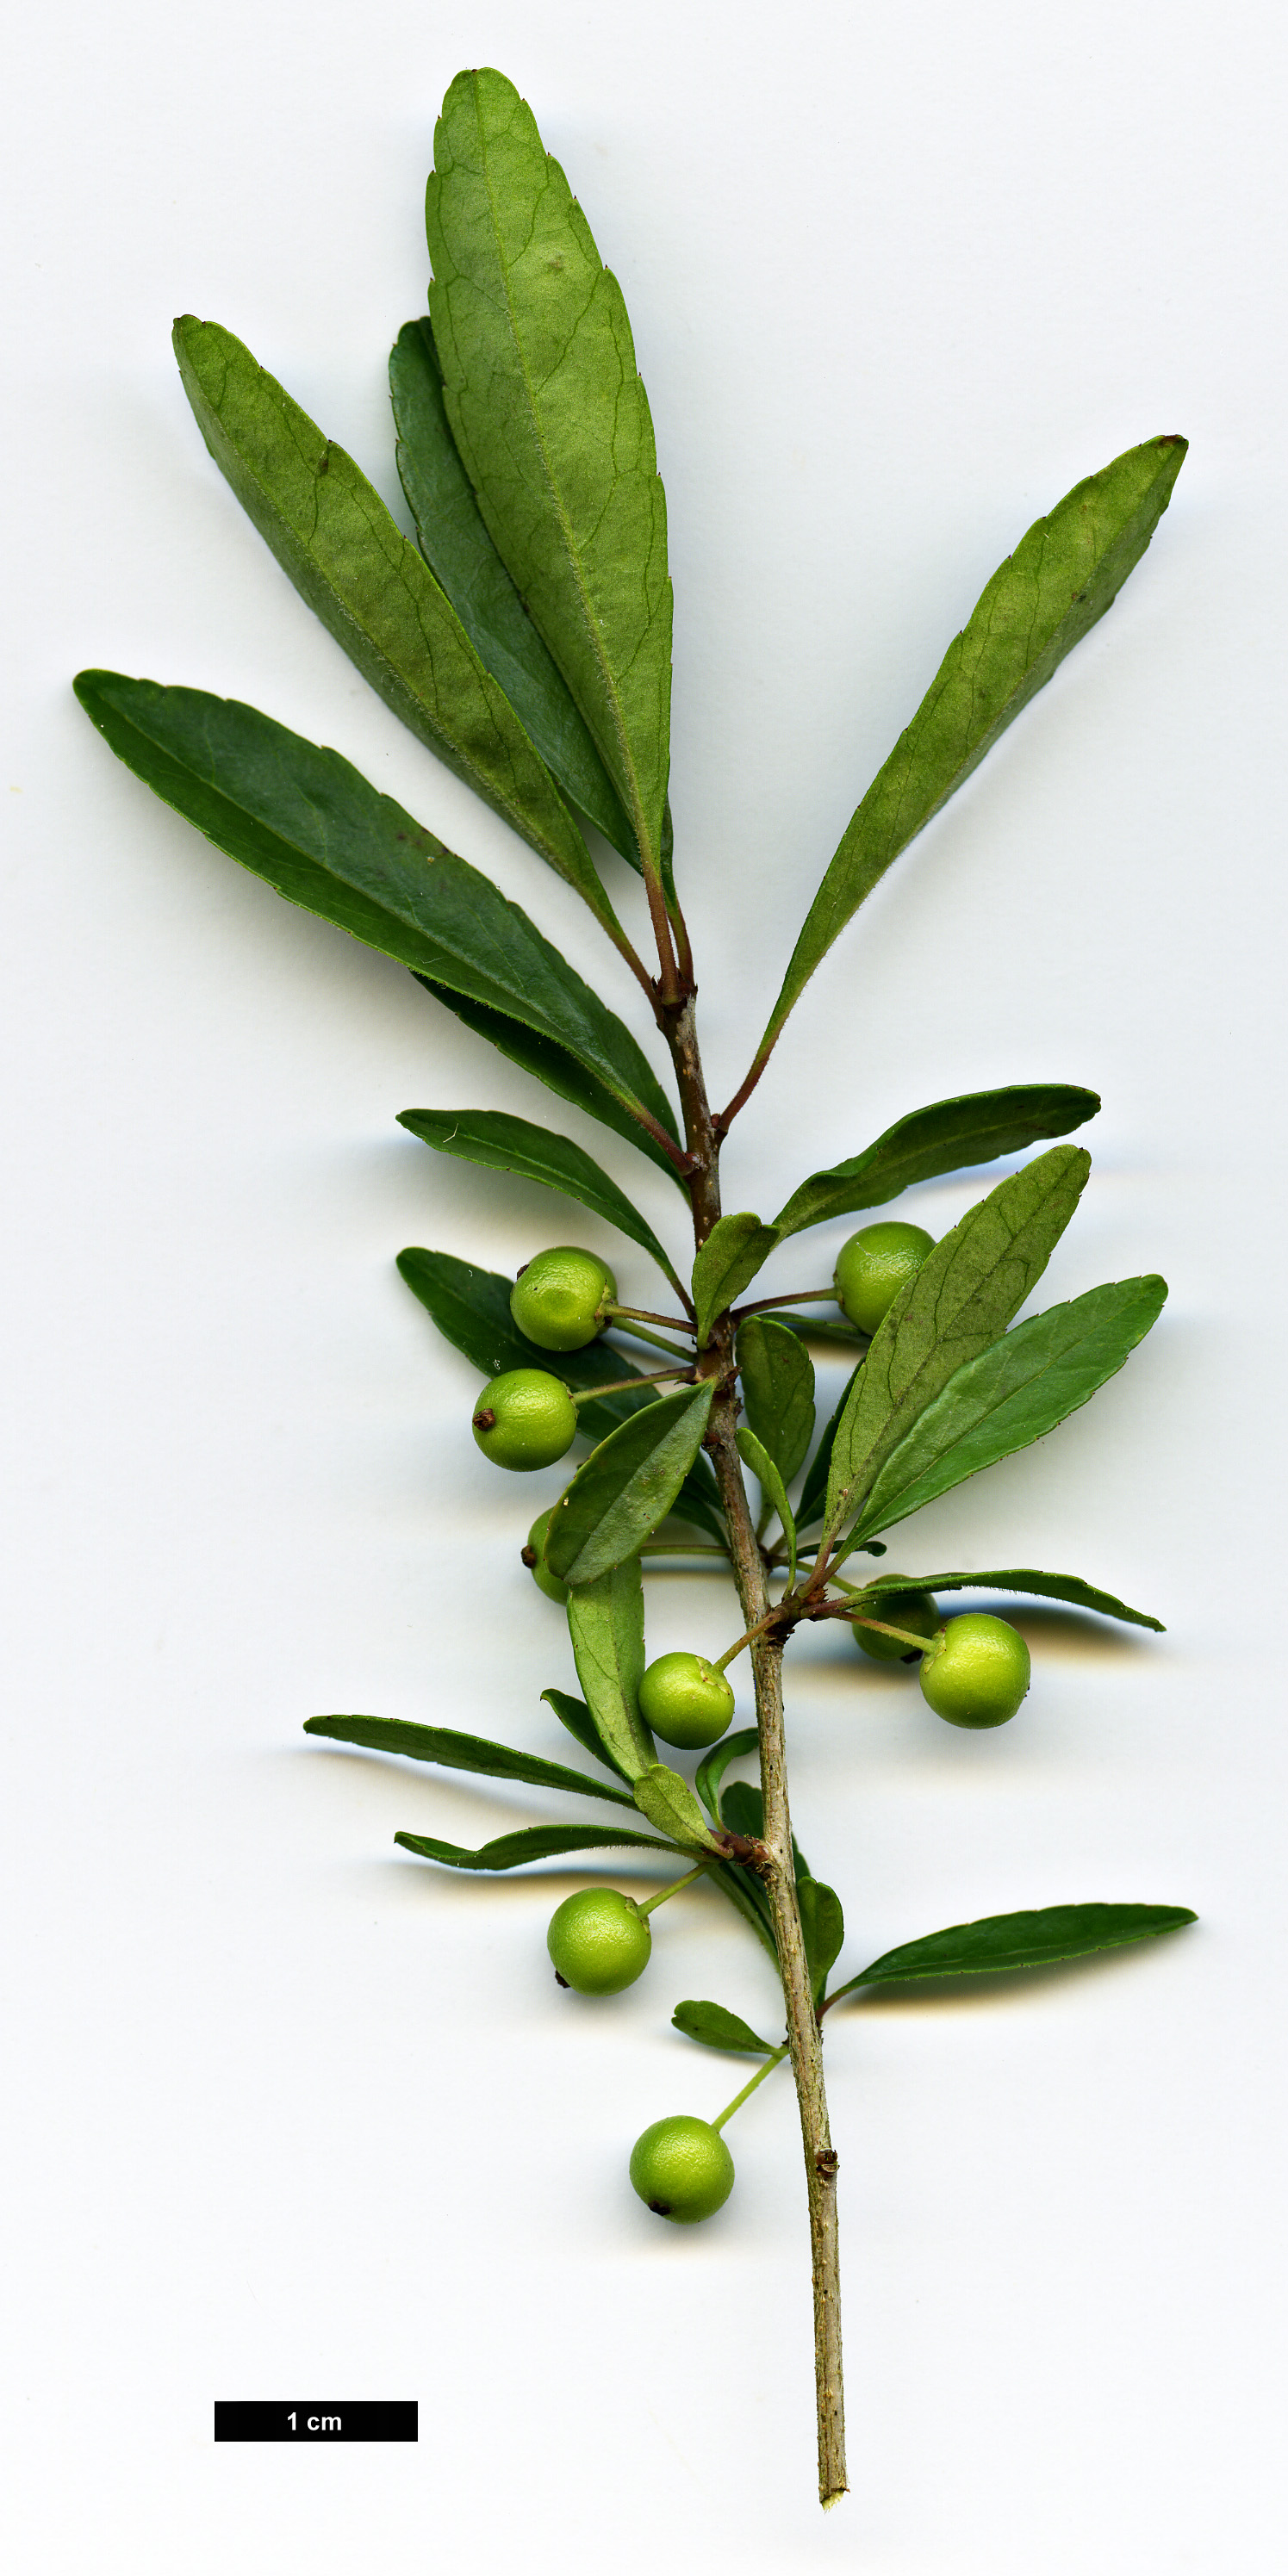 High resolution image: Family: Aquifoliaceae - Genus: Ilex - Taxon: curtisii